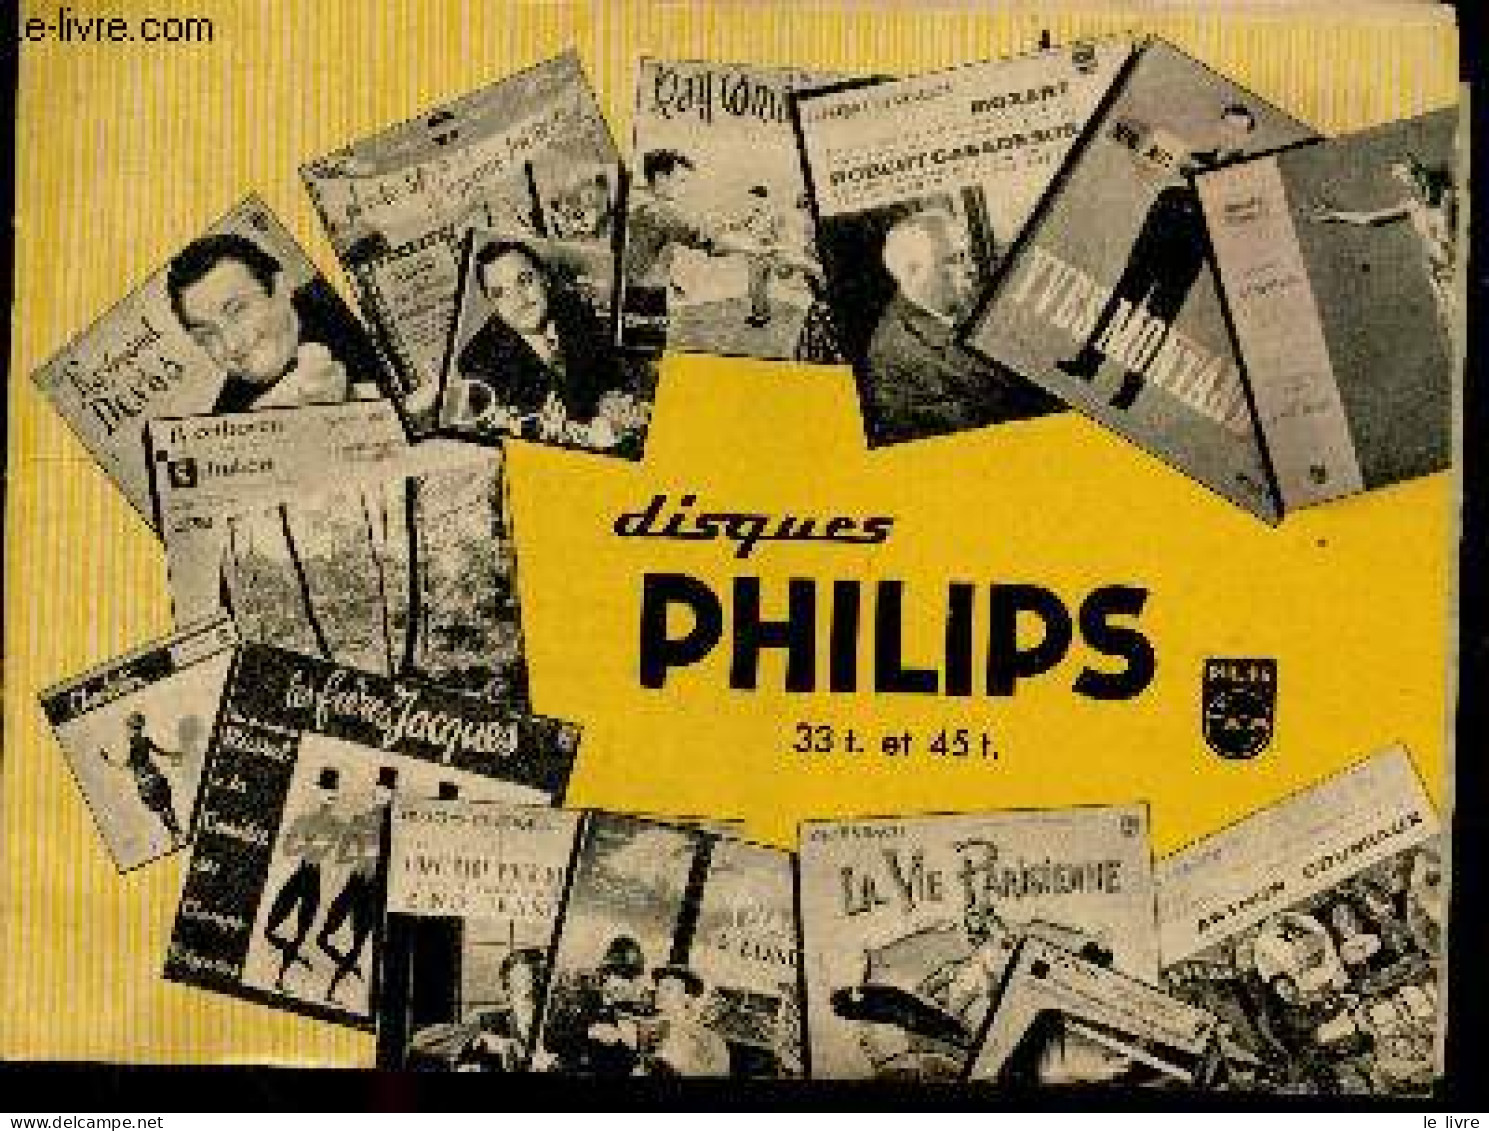 Disques Philips 33T. Et 45T. - Livret Publicitaire - Classiques Pour Tous, Operettes, Theatre Pour Tous, Jazz, Opera, Ch - Muziek